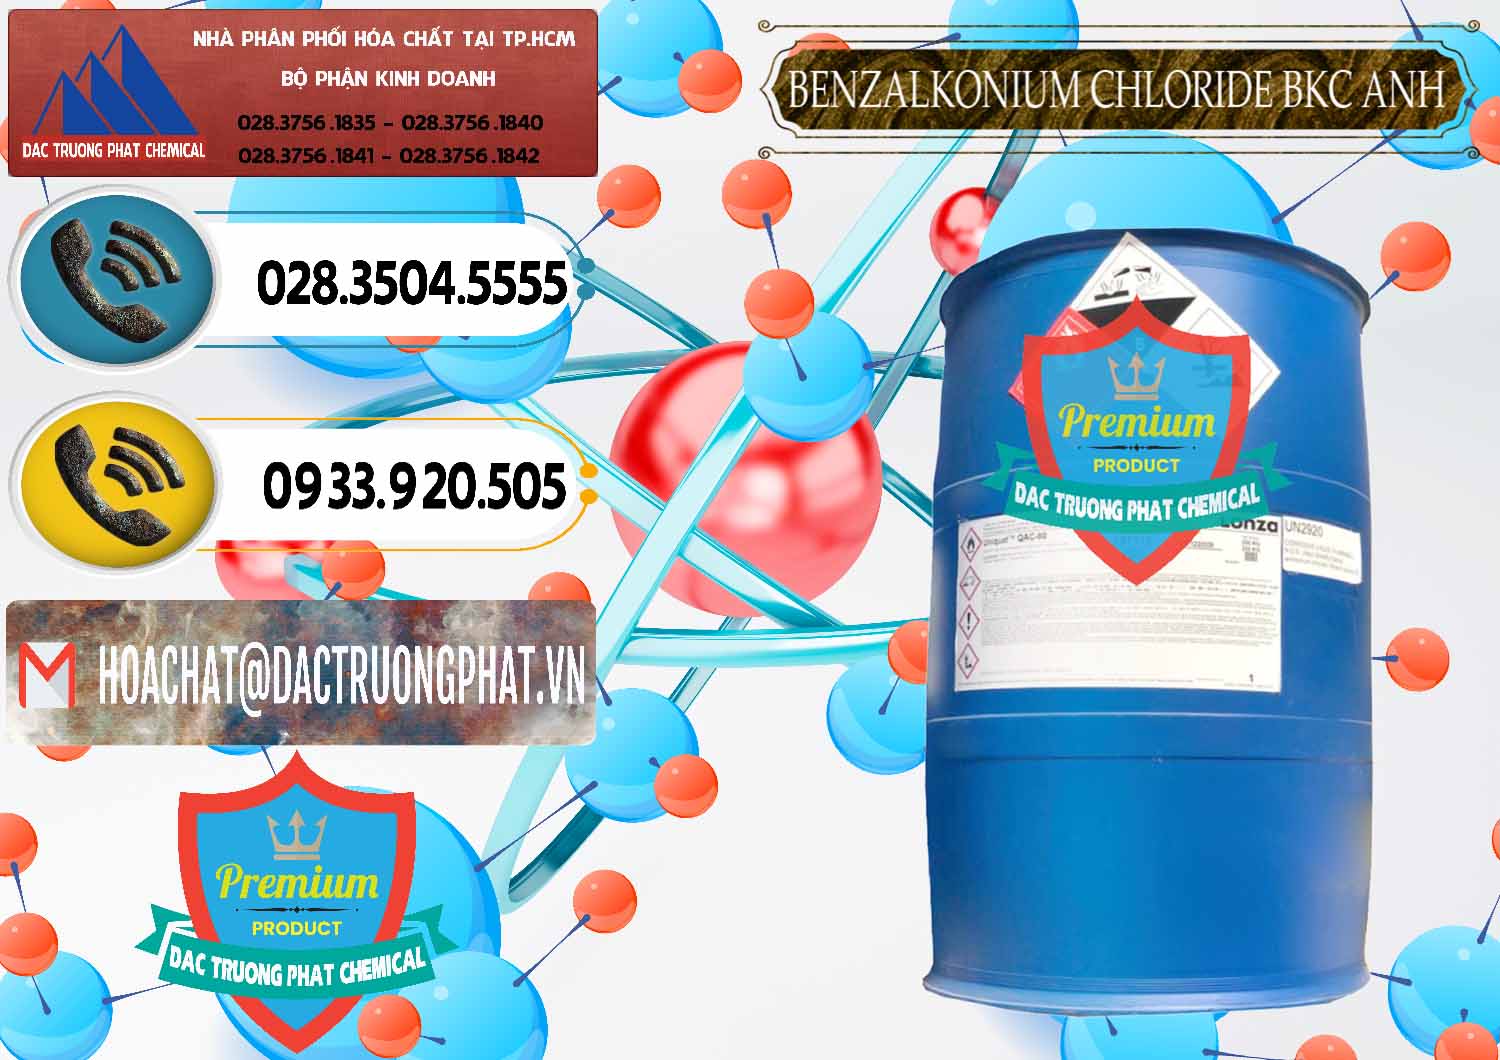 Nơi nhập khẩu _ bán BKC - Benzalkonium Chloride 80% Anh Quốc Uk Kingdoms - 0457 - Cty cung cấp - bán hóa chất tại TP.HCM - hoachatdetnhuom.vn